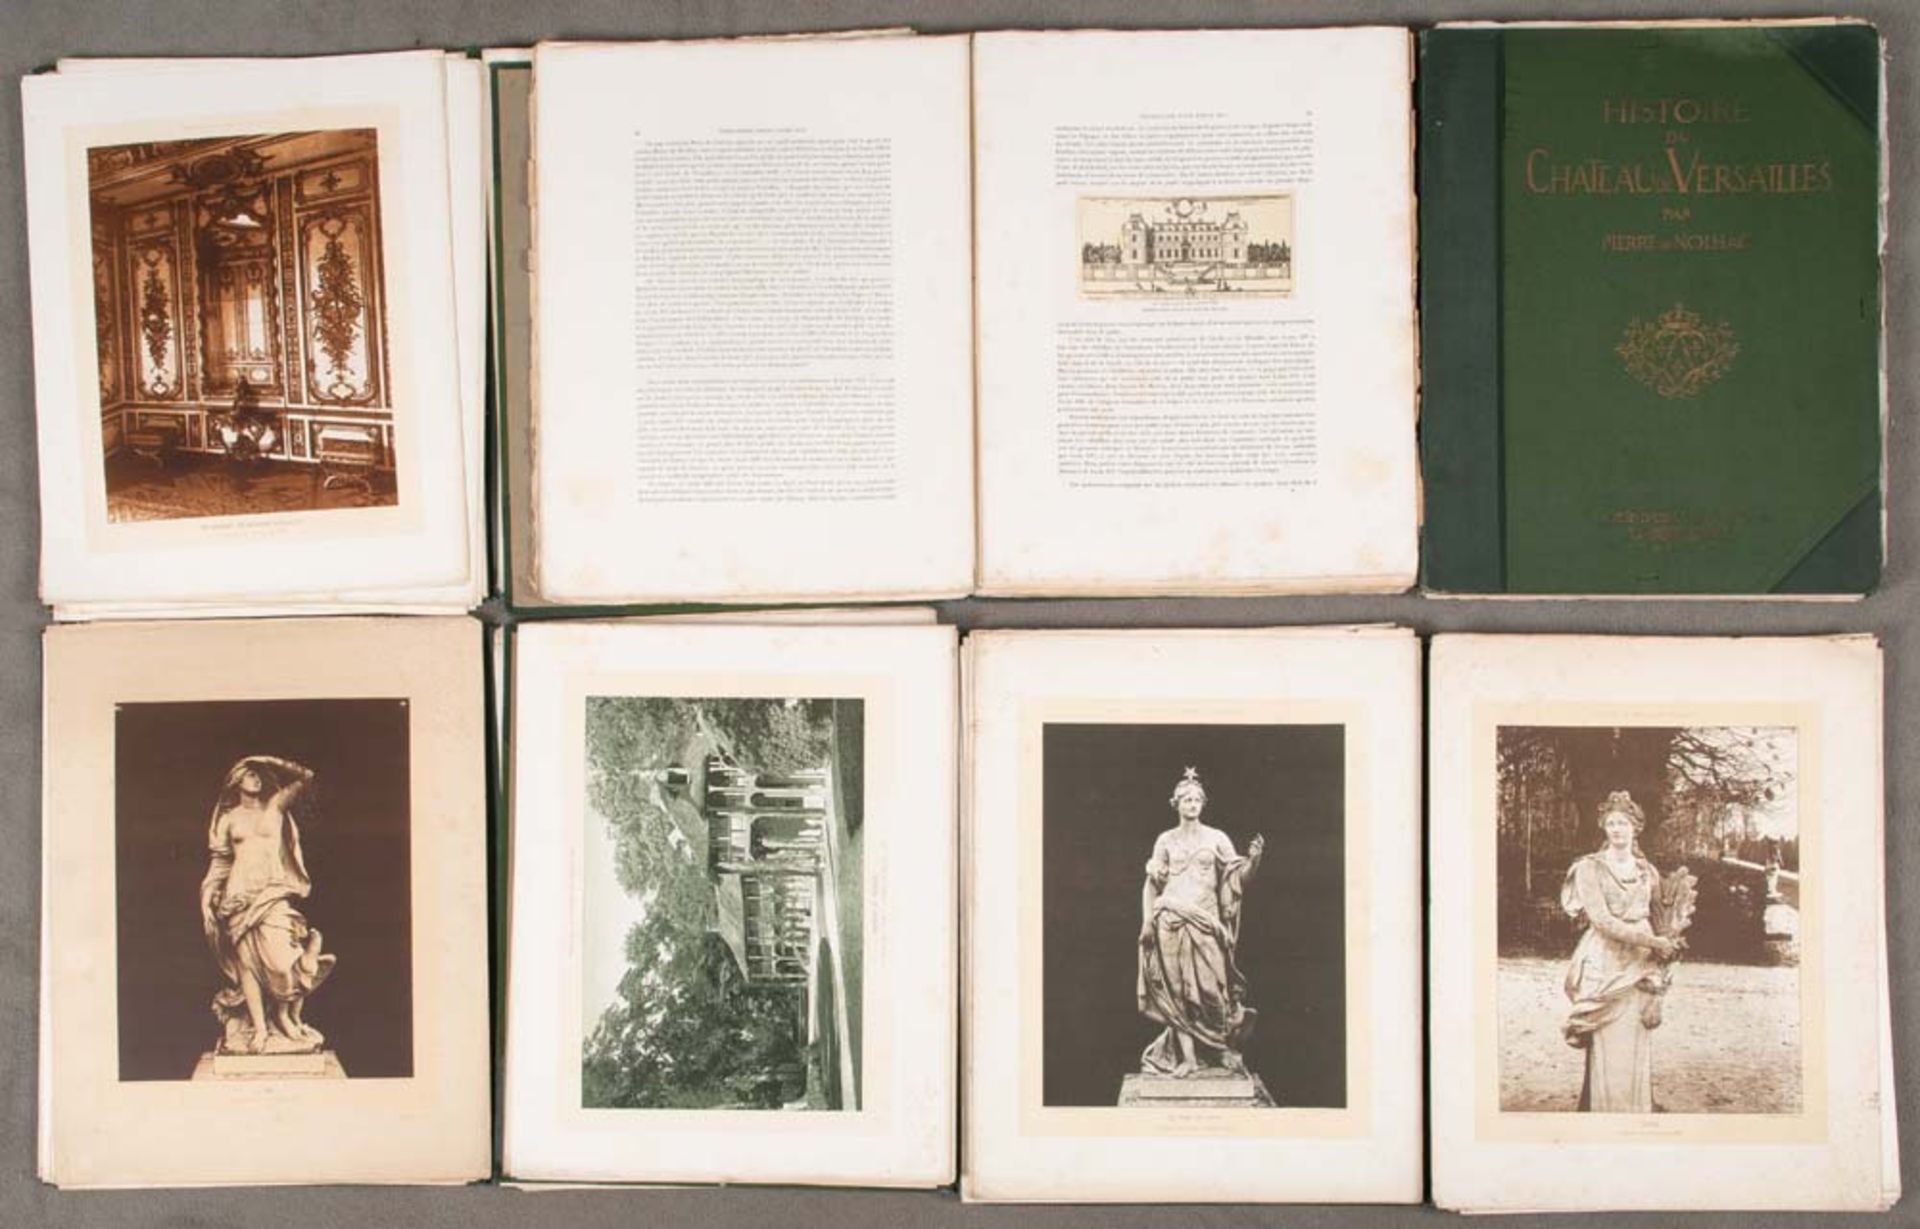 Sechs Bände Histoire de Chateau de Versailles par Pierre de Nolhac, Societé Edition Artistique,